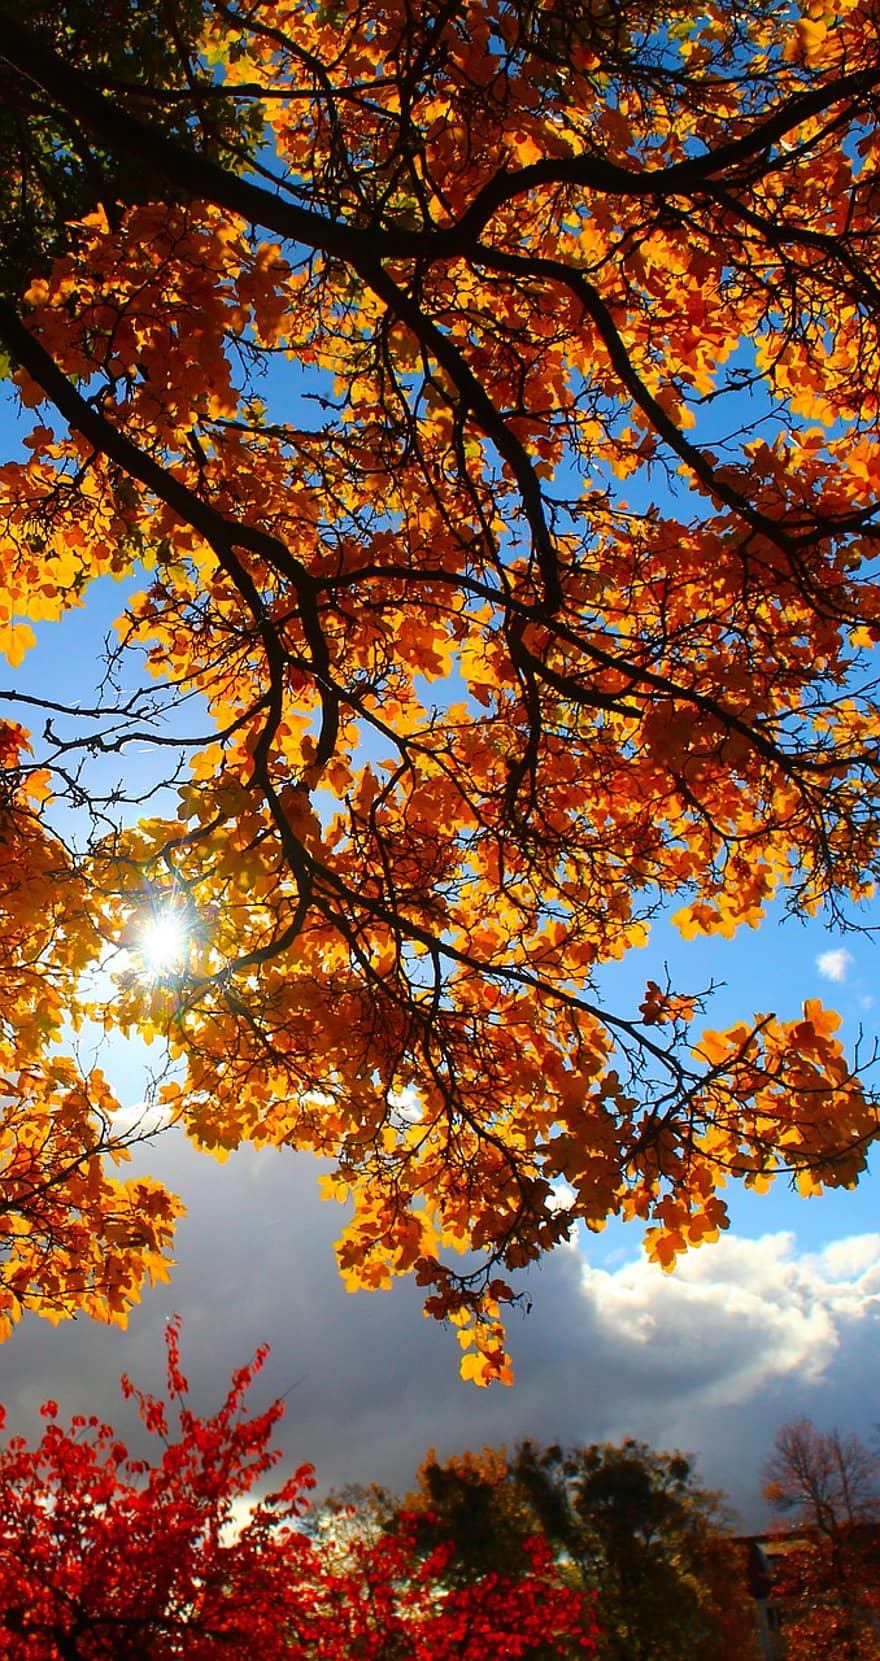 Herbst, Geäst, Baum, Blätter, Sonnenlicht, Himmel, Laub, fallen, Blatt, Gelb, Jahreszeit